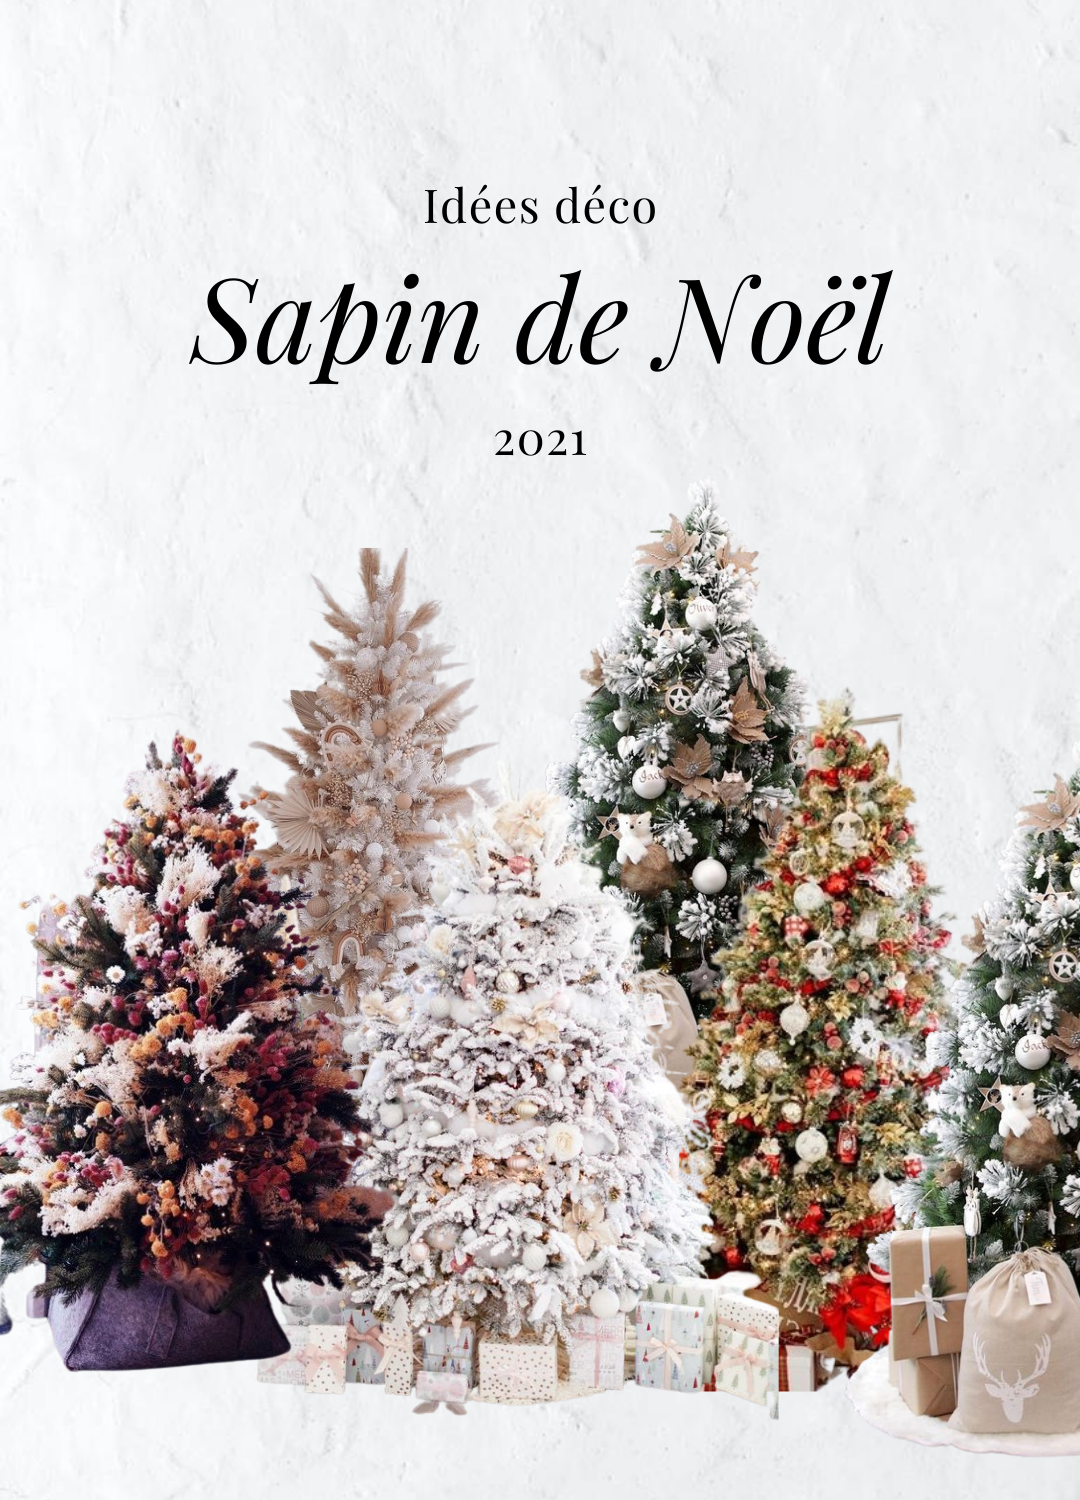 Idées déco sapin de Noël 2021 – Home Inspiration by Manon Thonnard